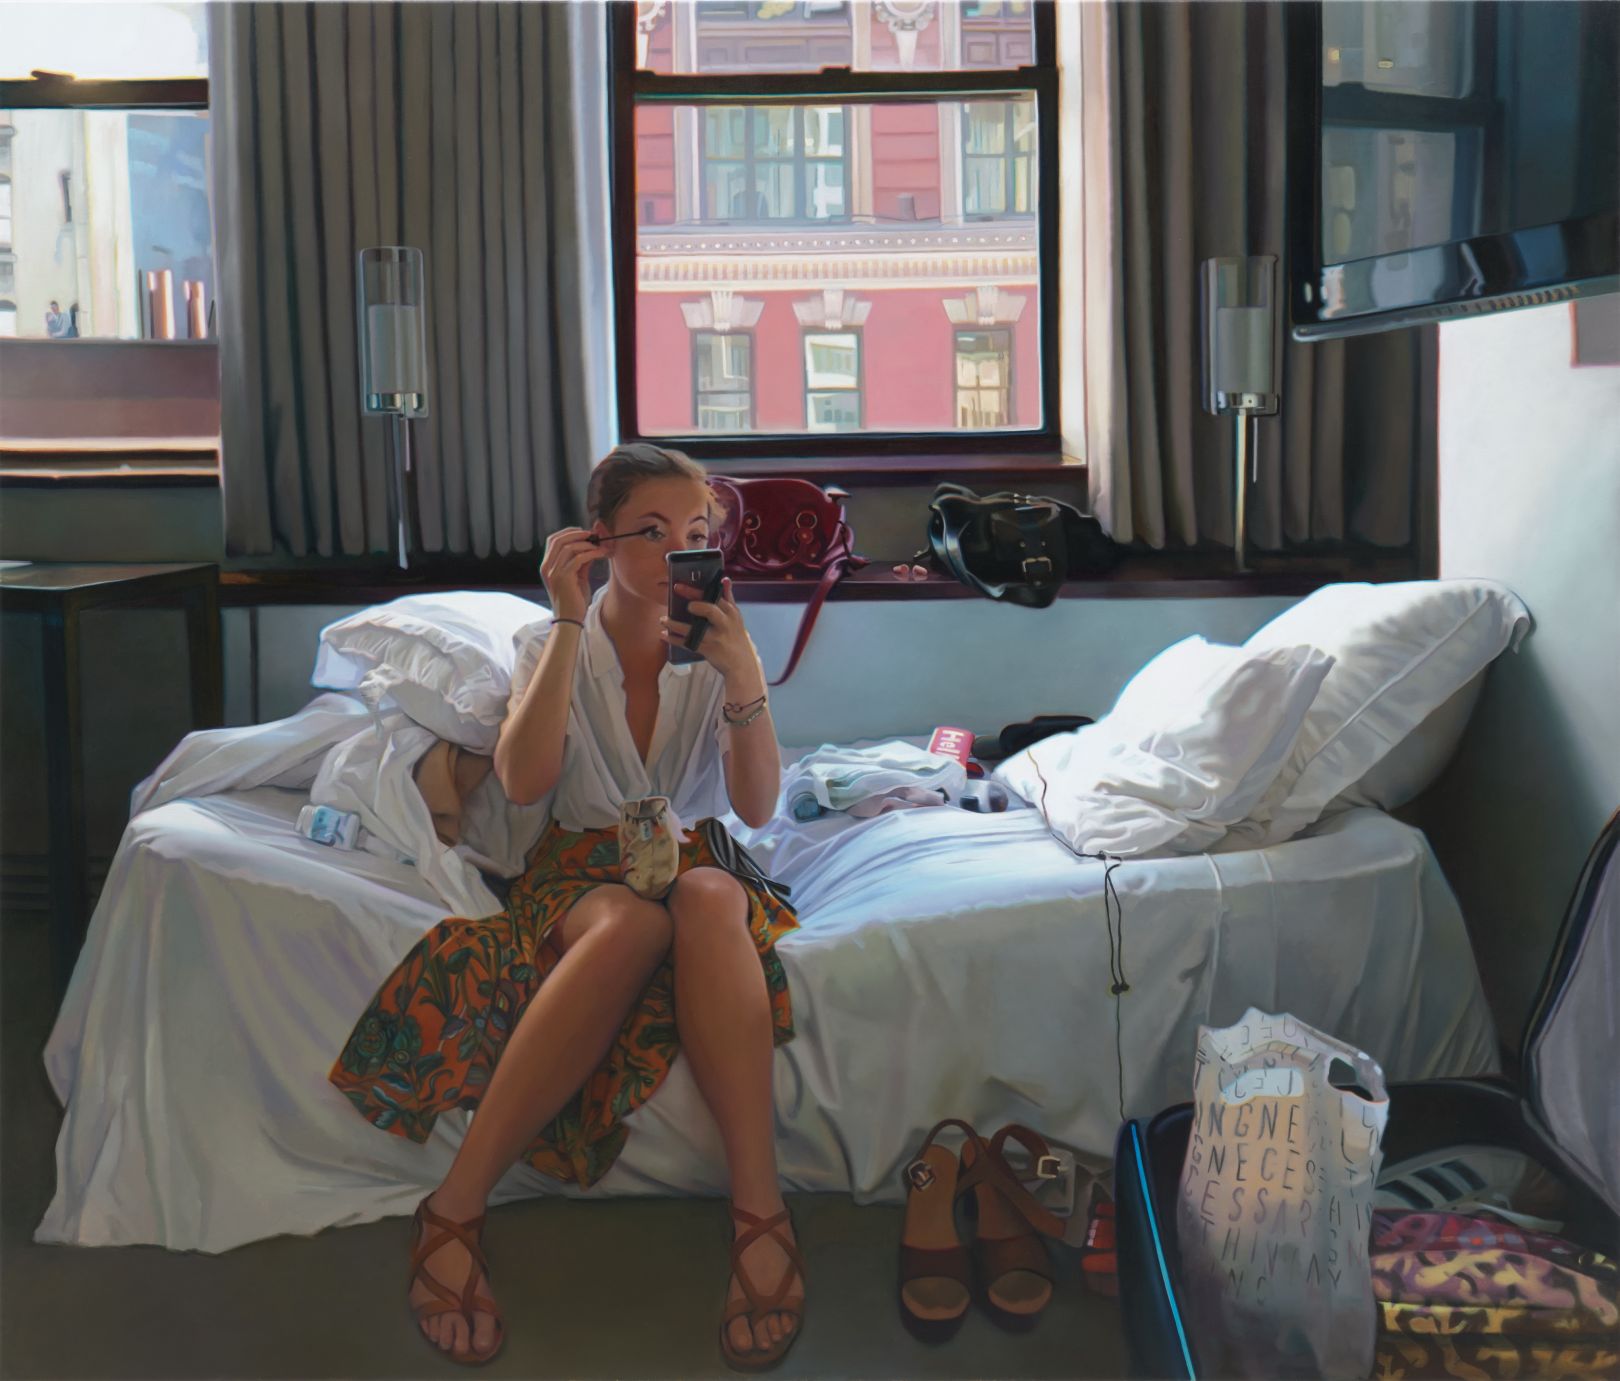 Гиперреалистичные картины Кейт Уотерс (Kate Waters) похожи на фотографии современной городской жизни